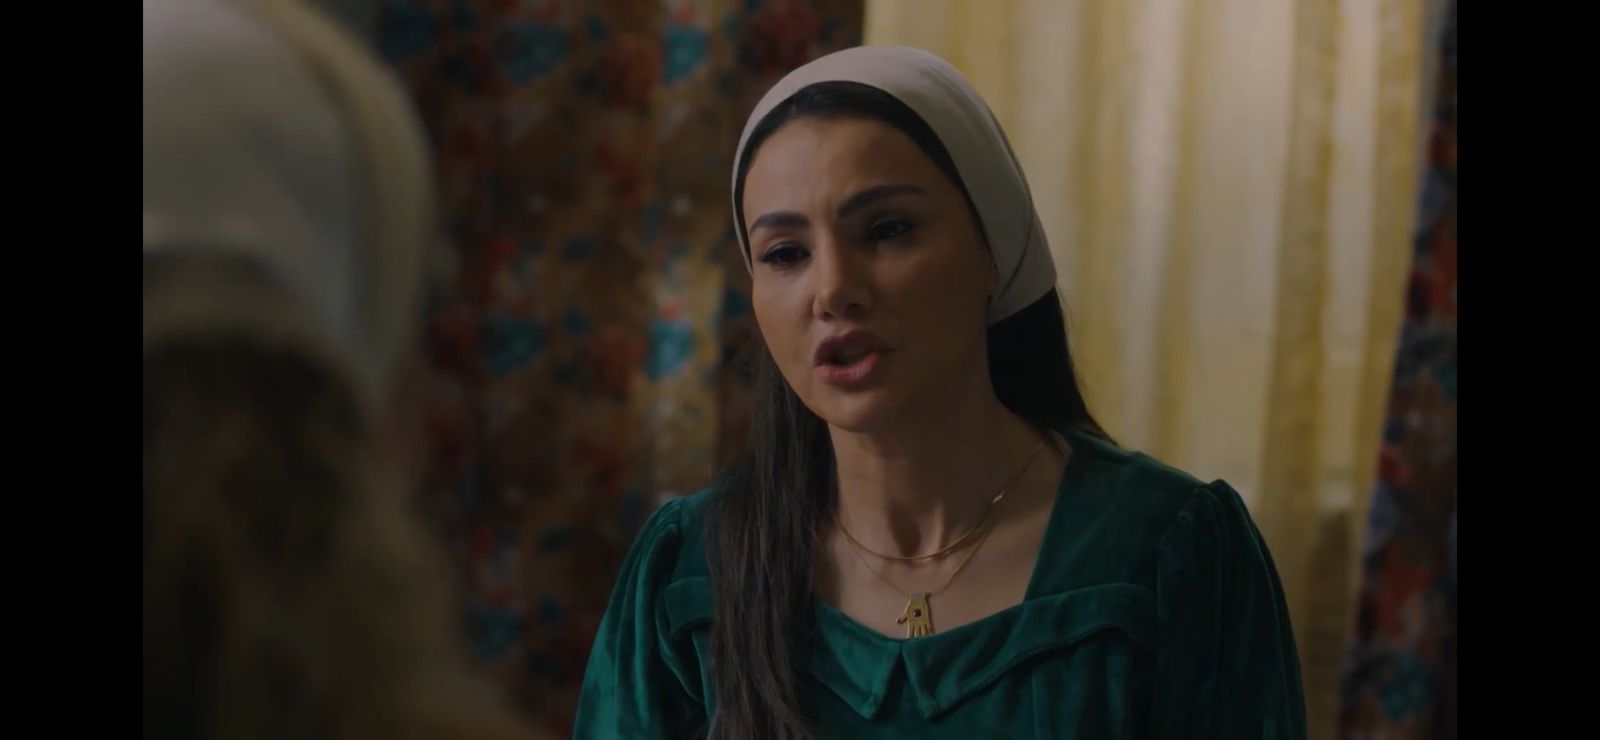 مسلسل حق العرب الحلقة 2 وفاء مكي تهدد دينا فؤاد بفضحها إذا لم تكمل عملها معها (2)